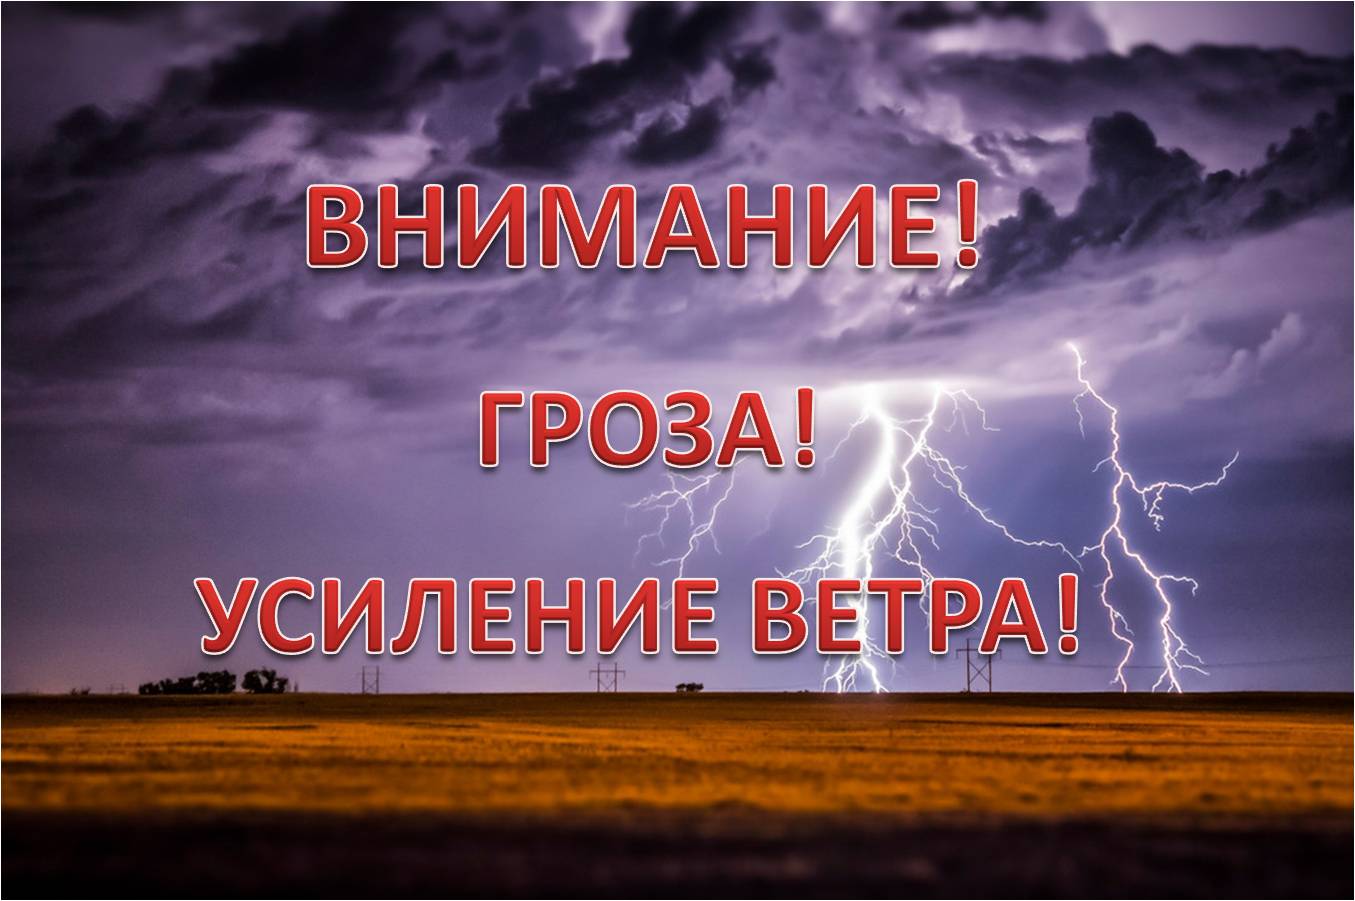 В Ивановской области прогнозируется гроза с порывистым ветром.